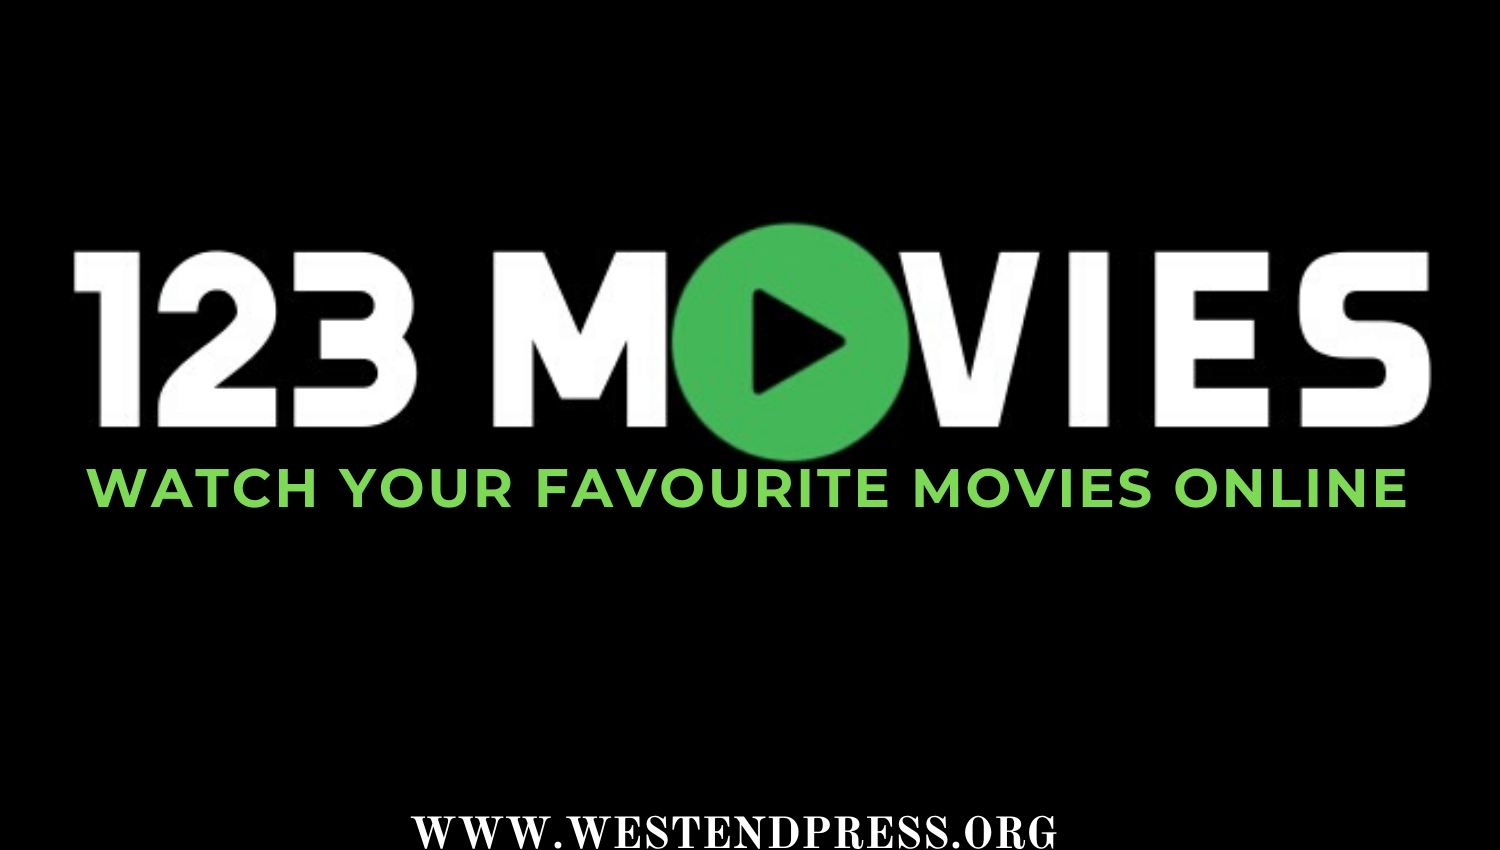 Movies1234